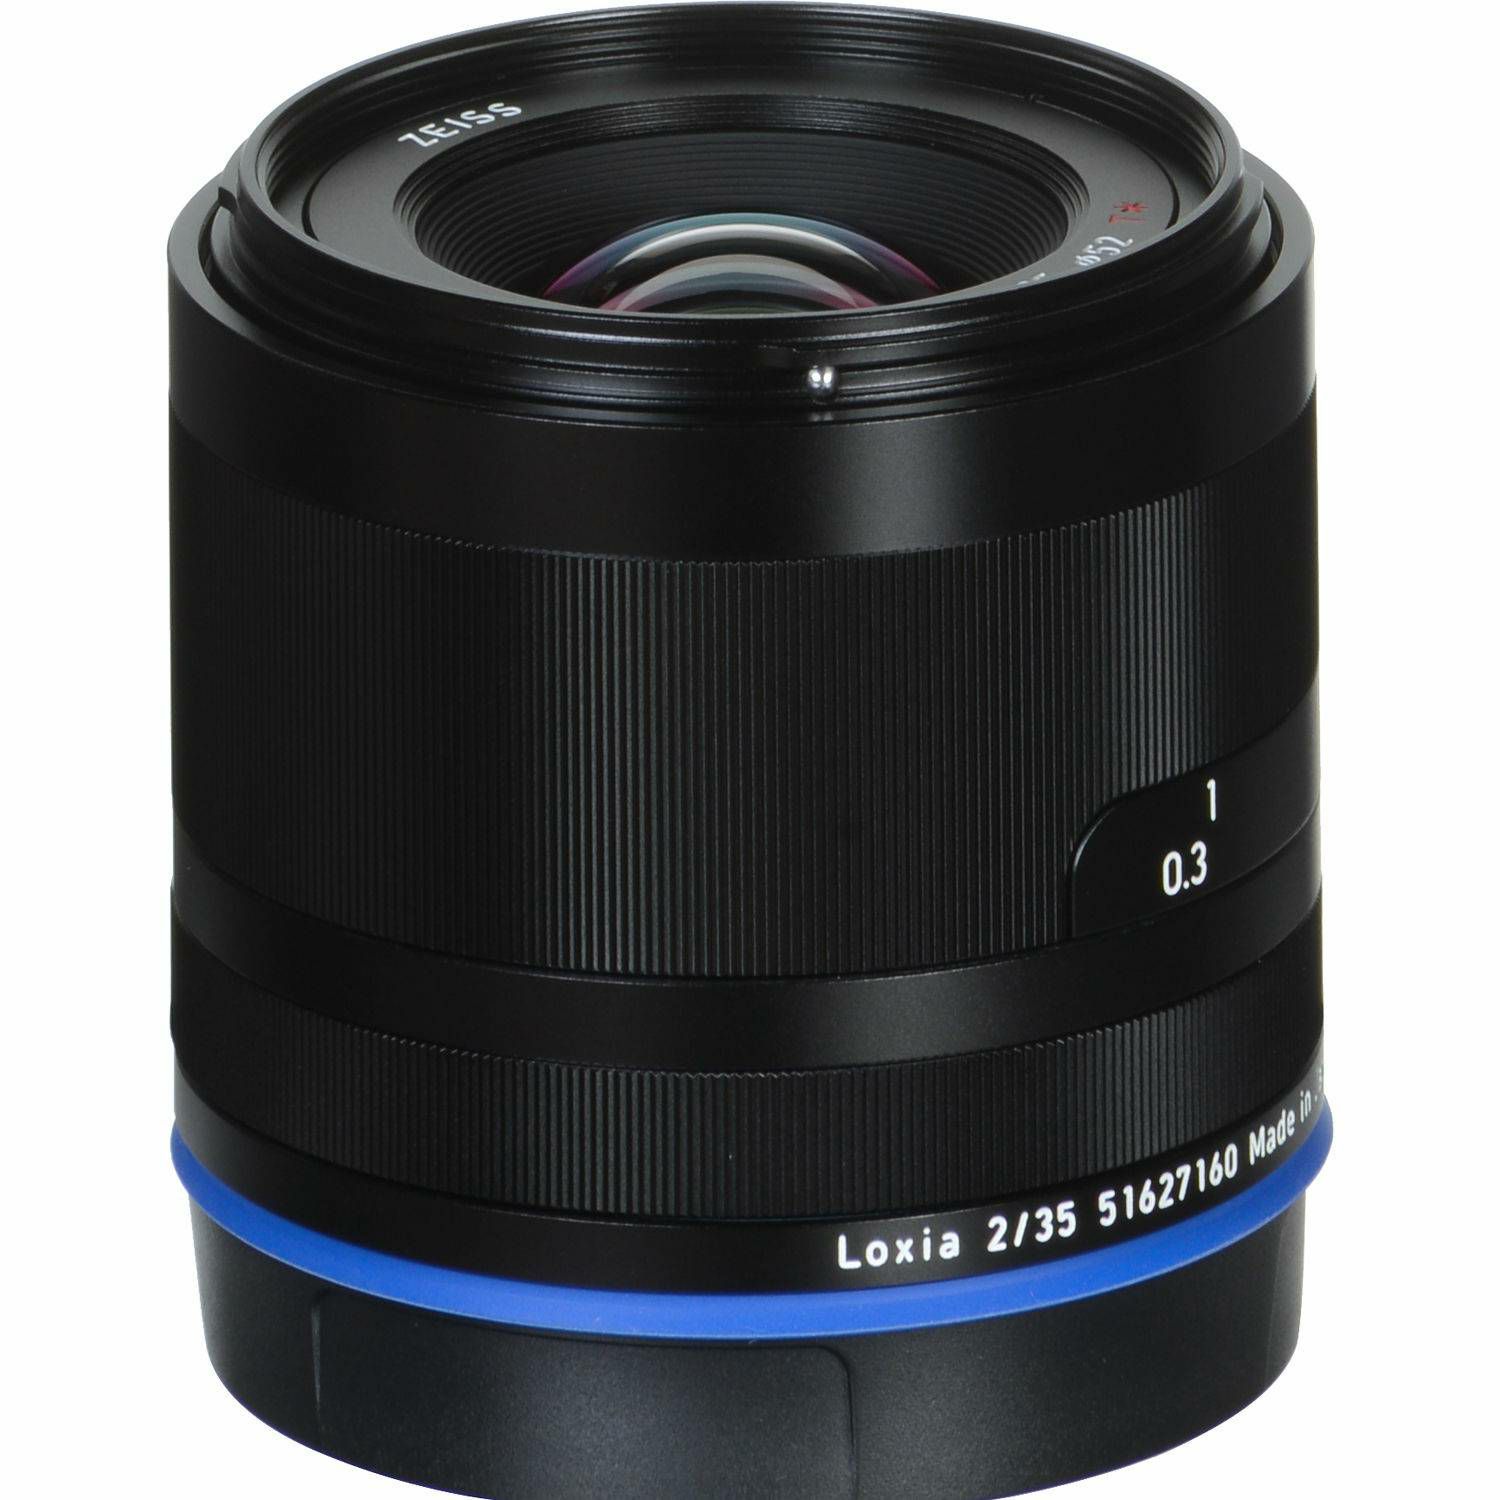 Zeiss Loxia 35mm f/2 FE širokokutni objektiv za Sony E-mount (2103-749)